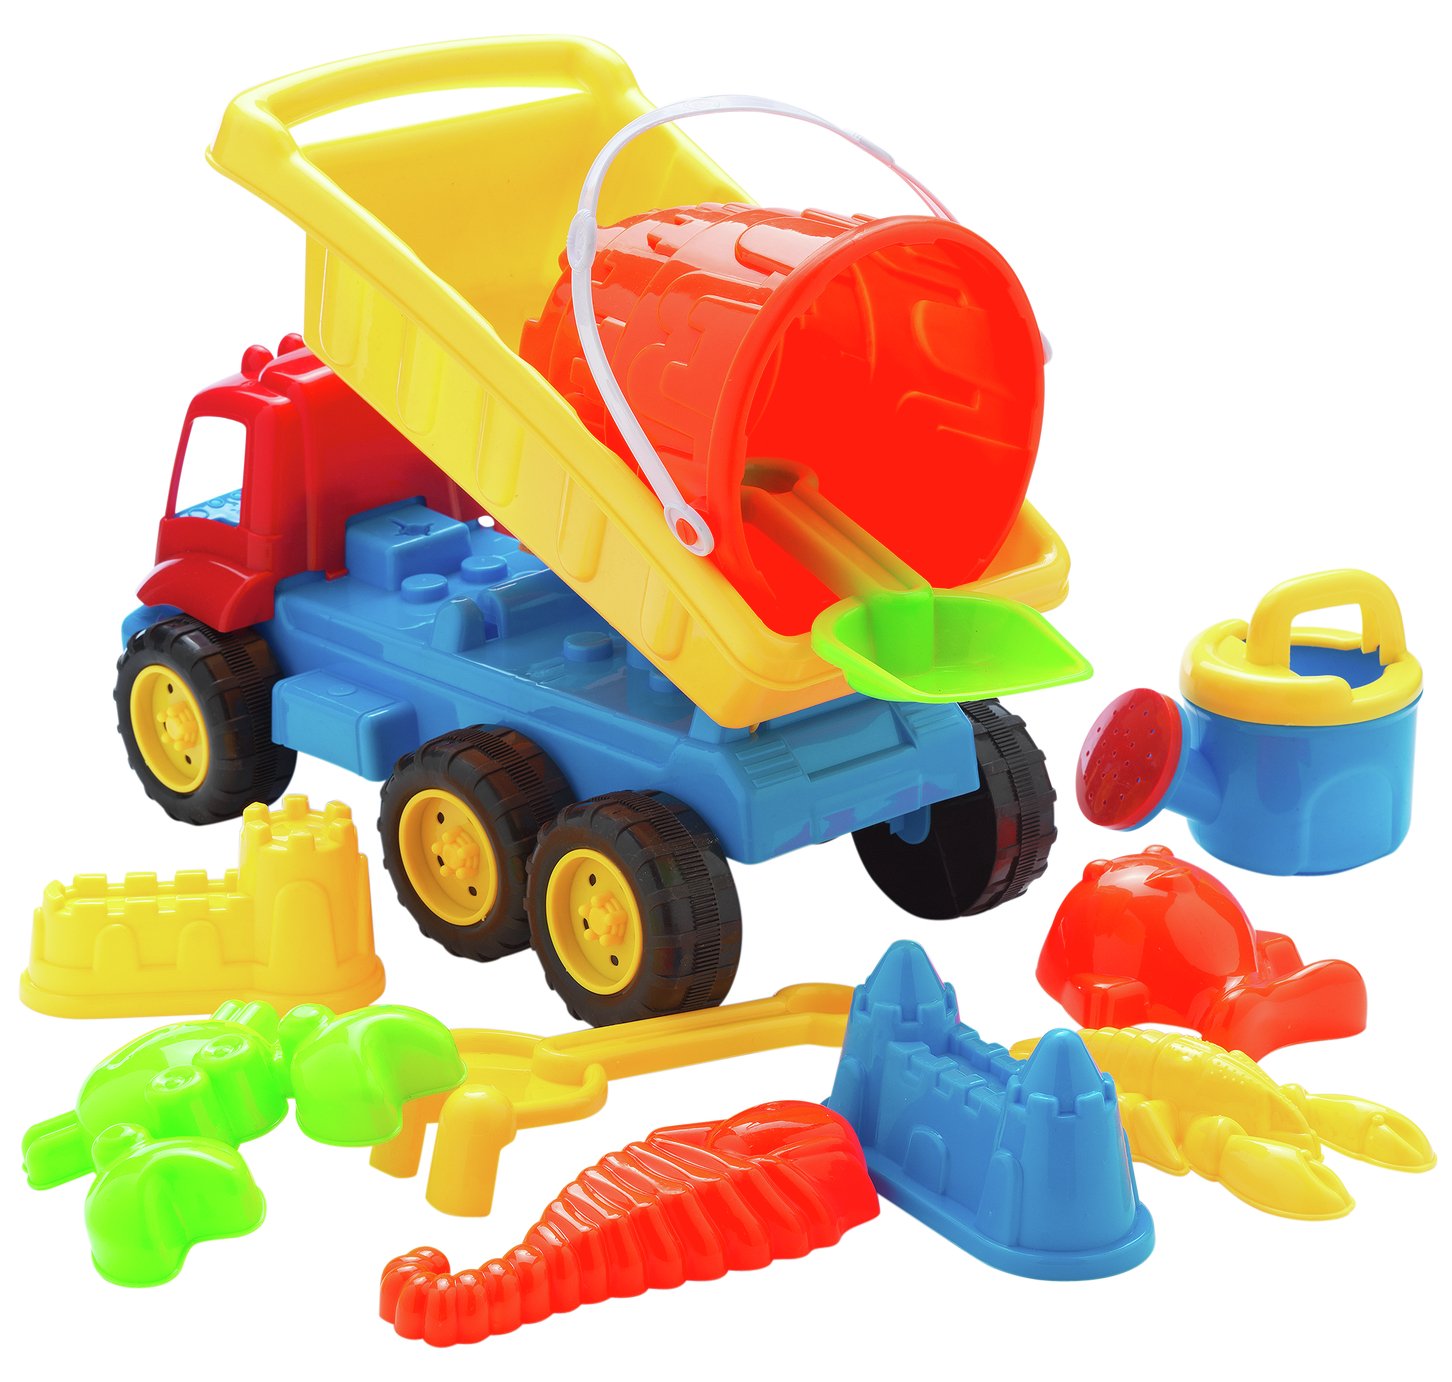 argos toy tool set